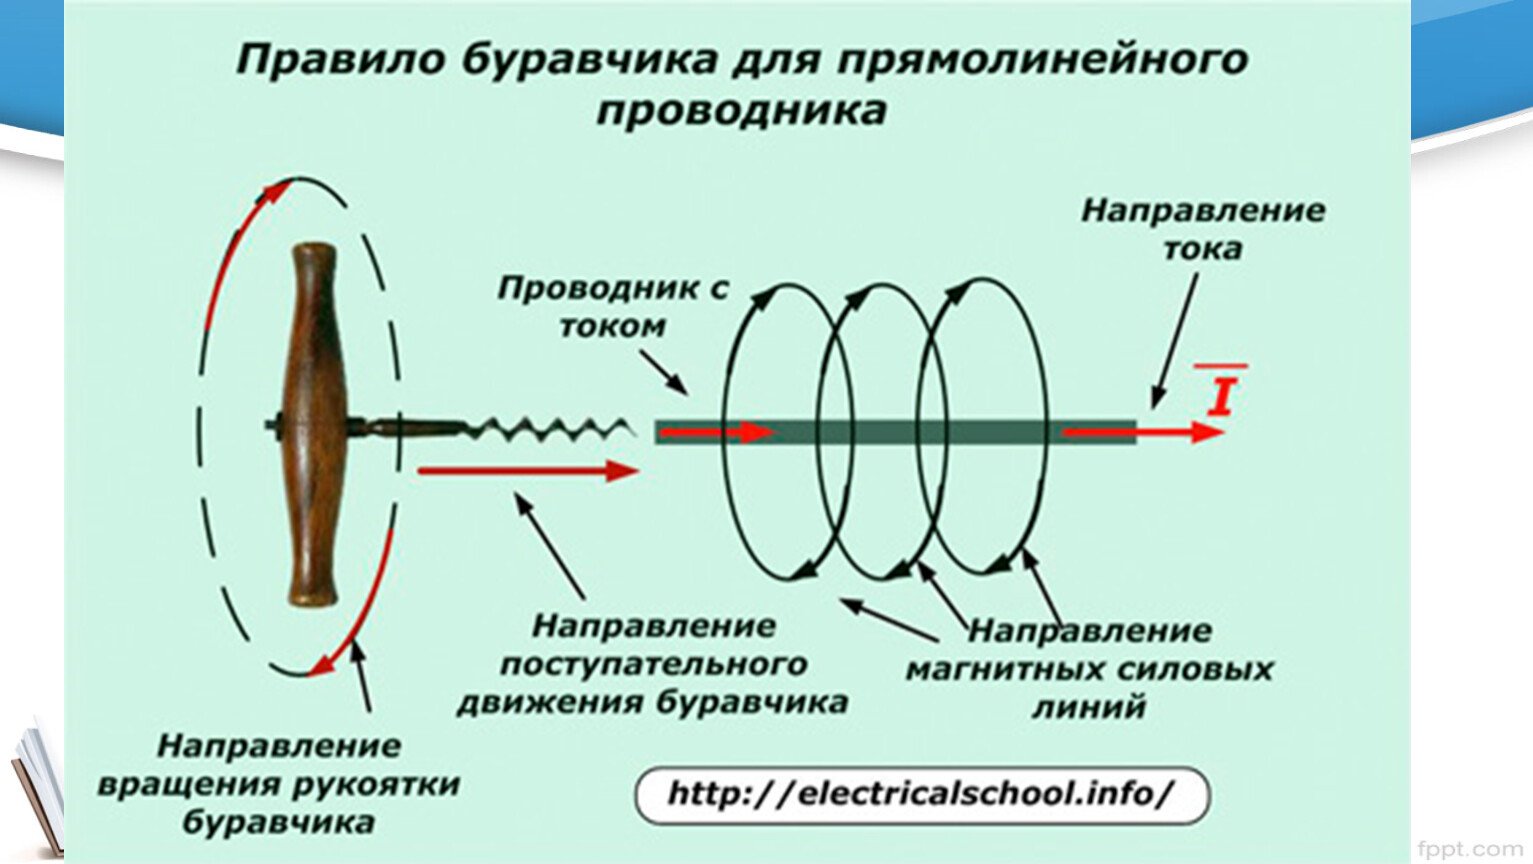 Направление тока в проводнике определяется правилом